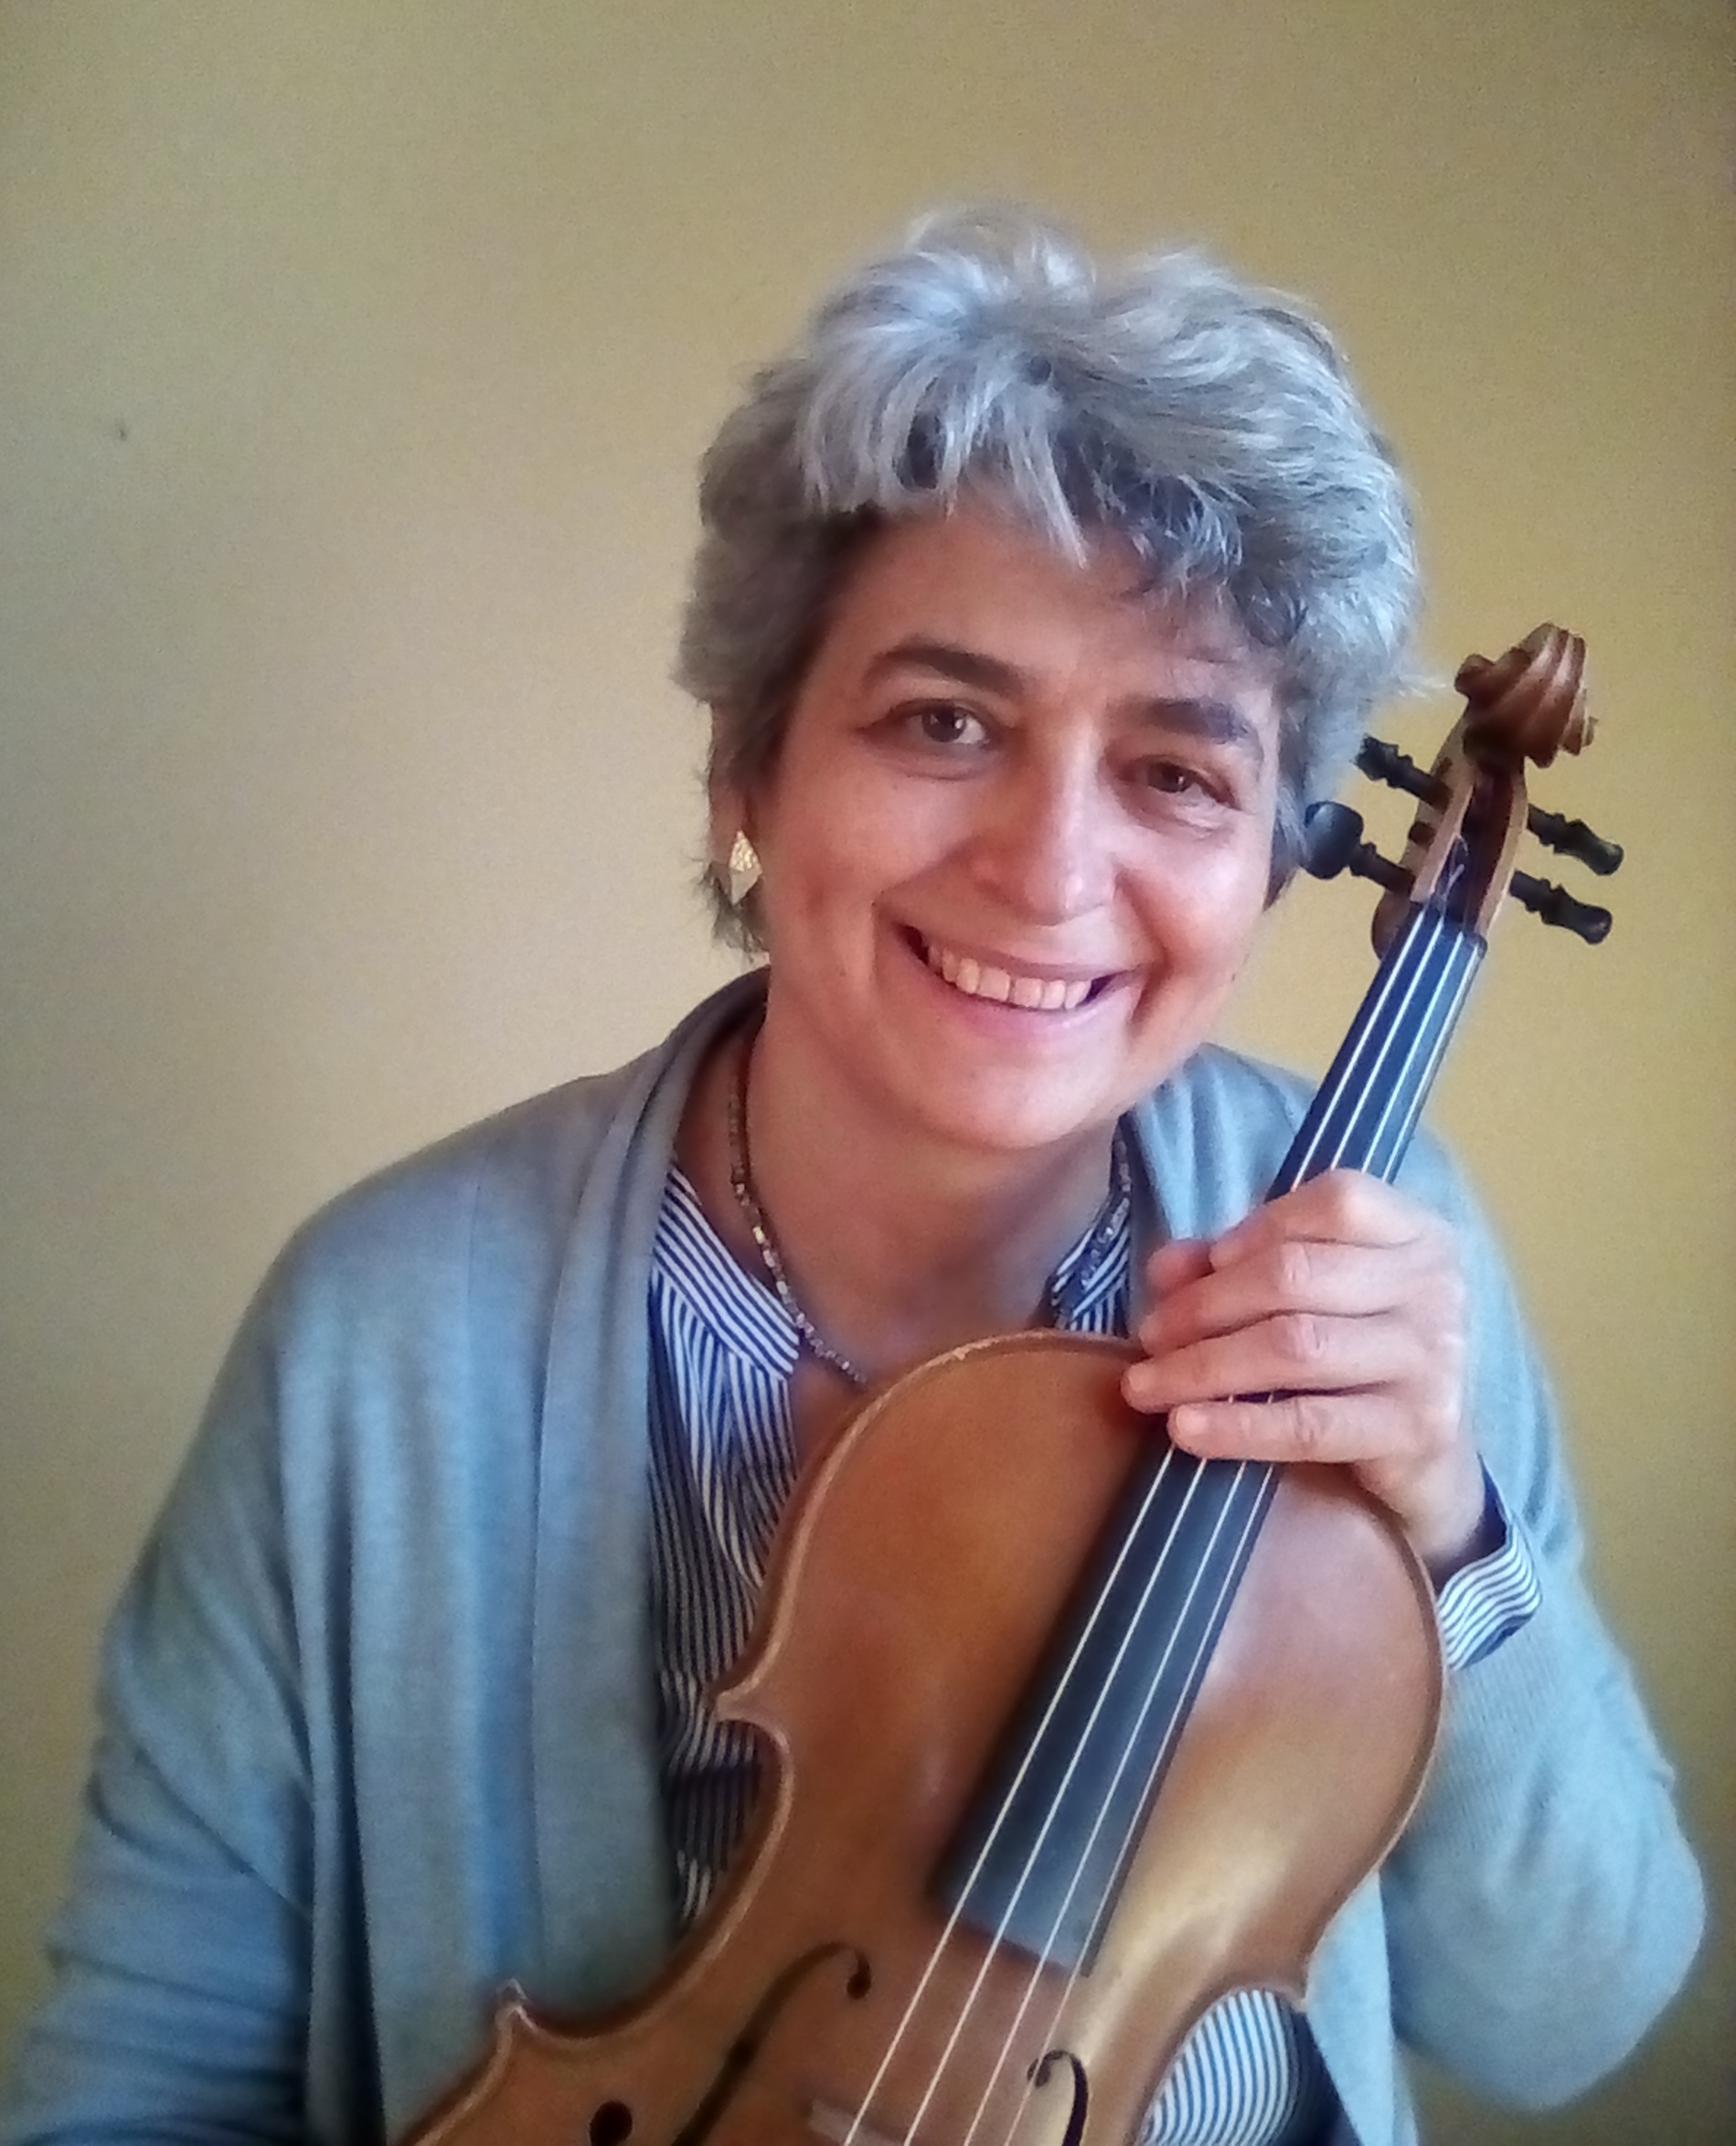 Lezioni di viola e violino online con Monica Cuneo. Esprimiti liberamente, suona più facilmente, agevolmente, migliora il suono, impara in meno tempo col Nuovo Approccio Havas, eliminando gli ostacoli